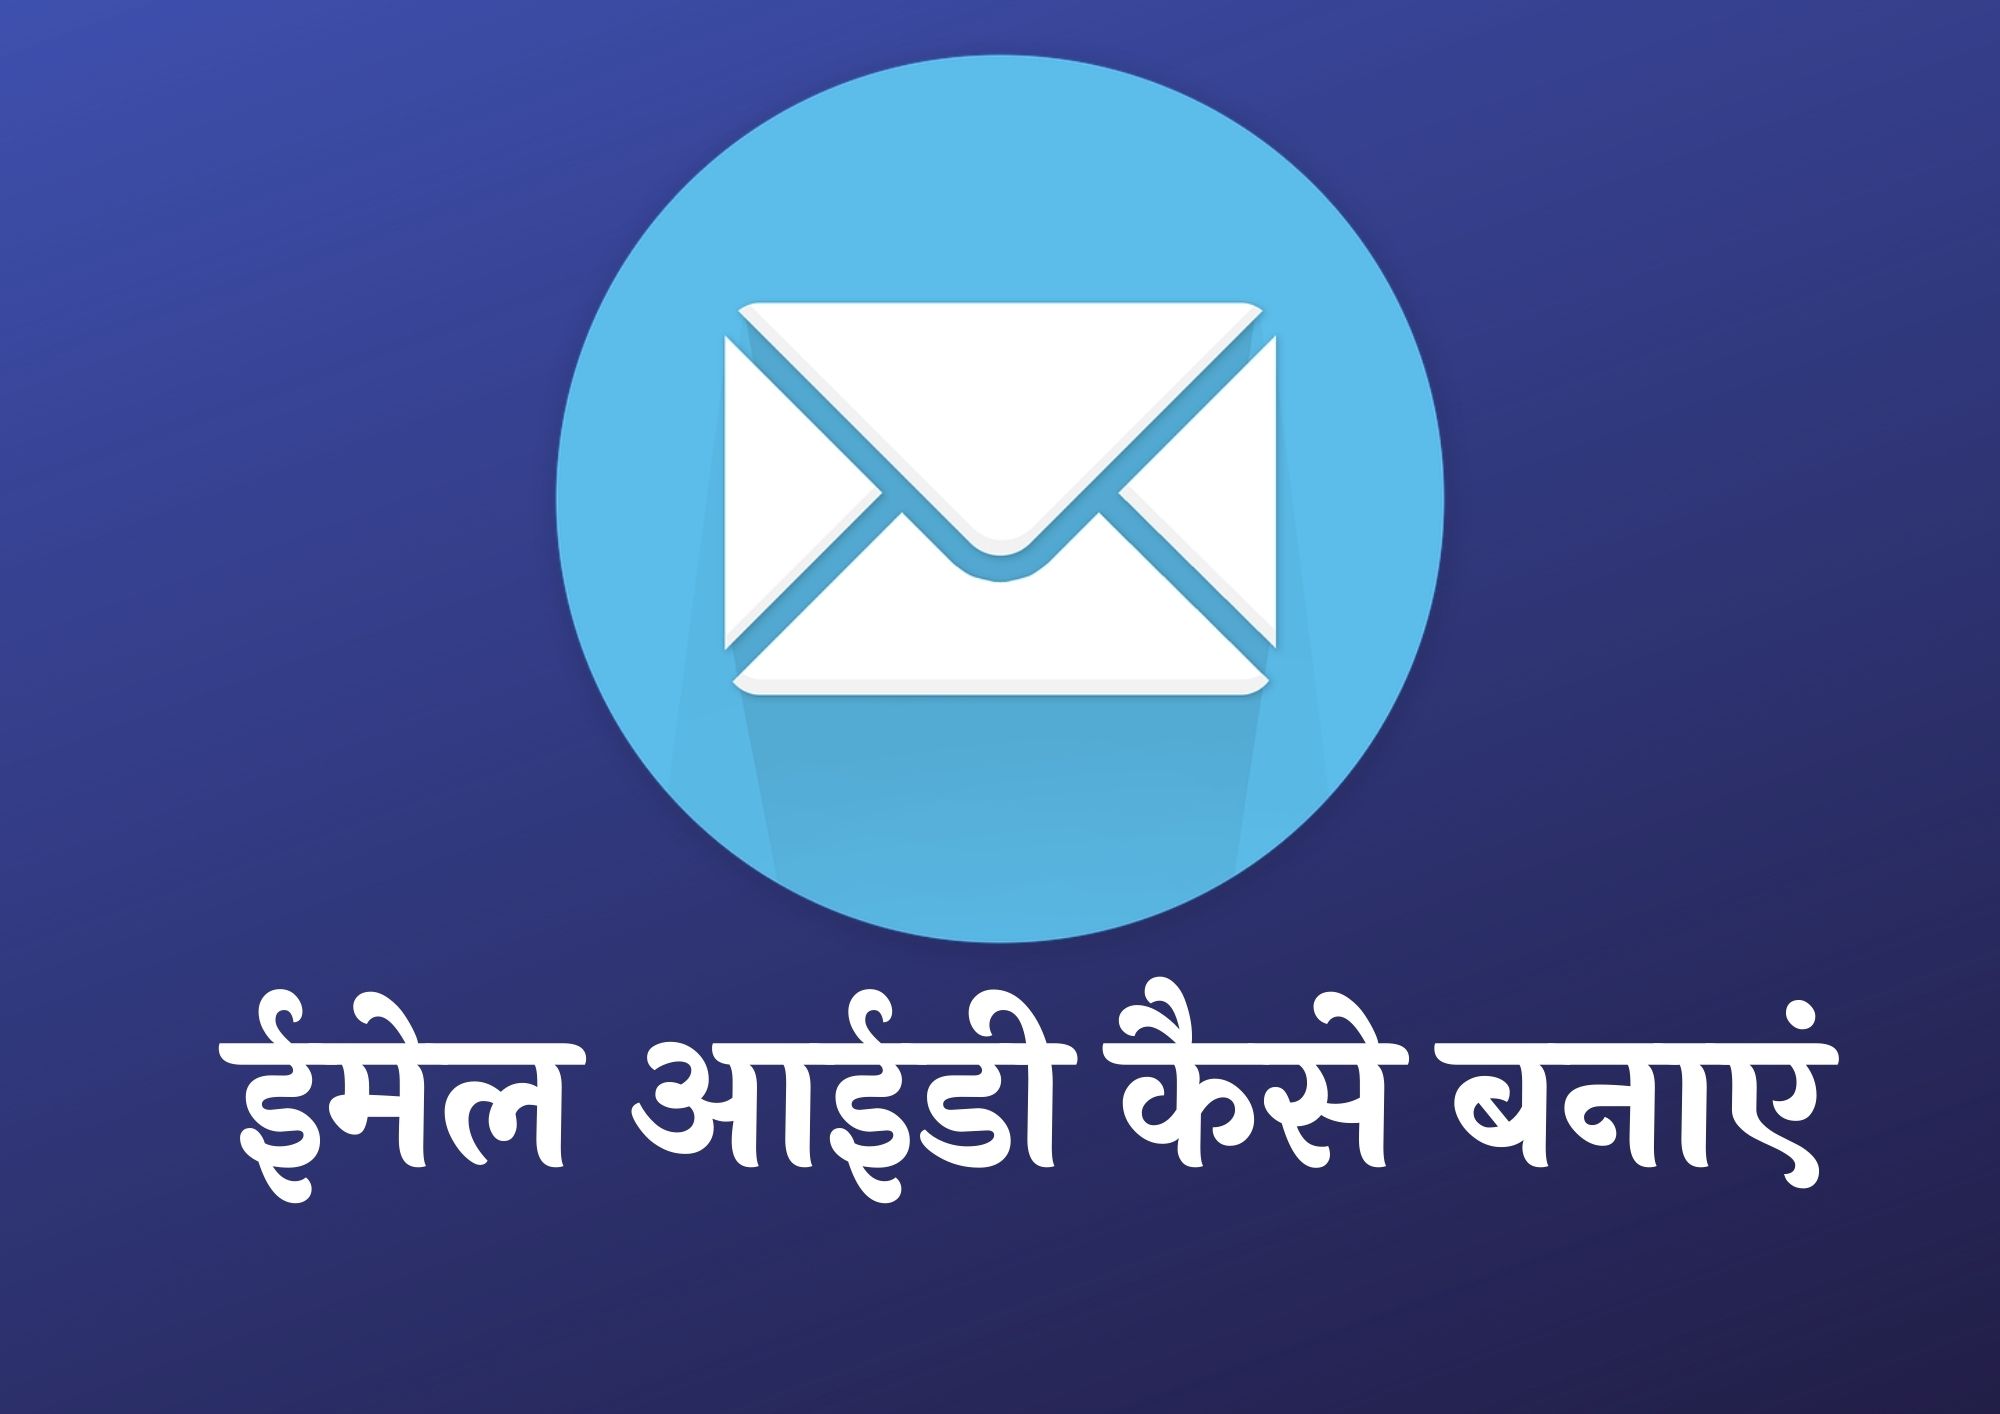 ईमेल ID बनानी है | Email ID Banani Hai | ईमेल अकाउंट खोले | नई ईमेल अकाउंट